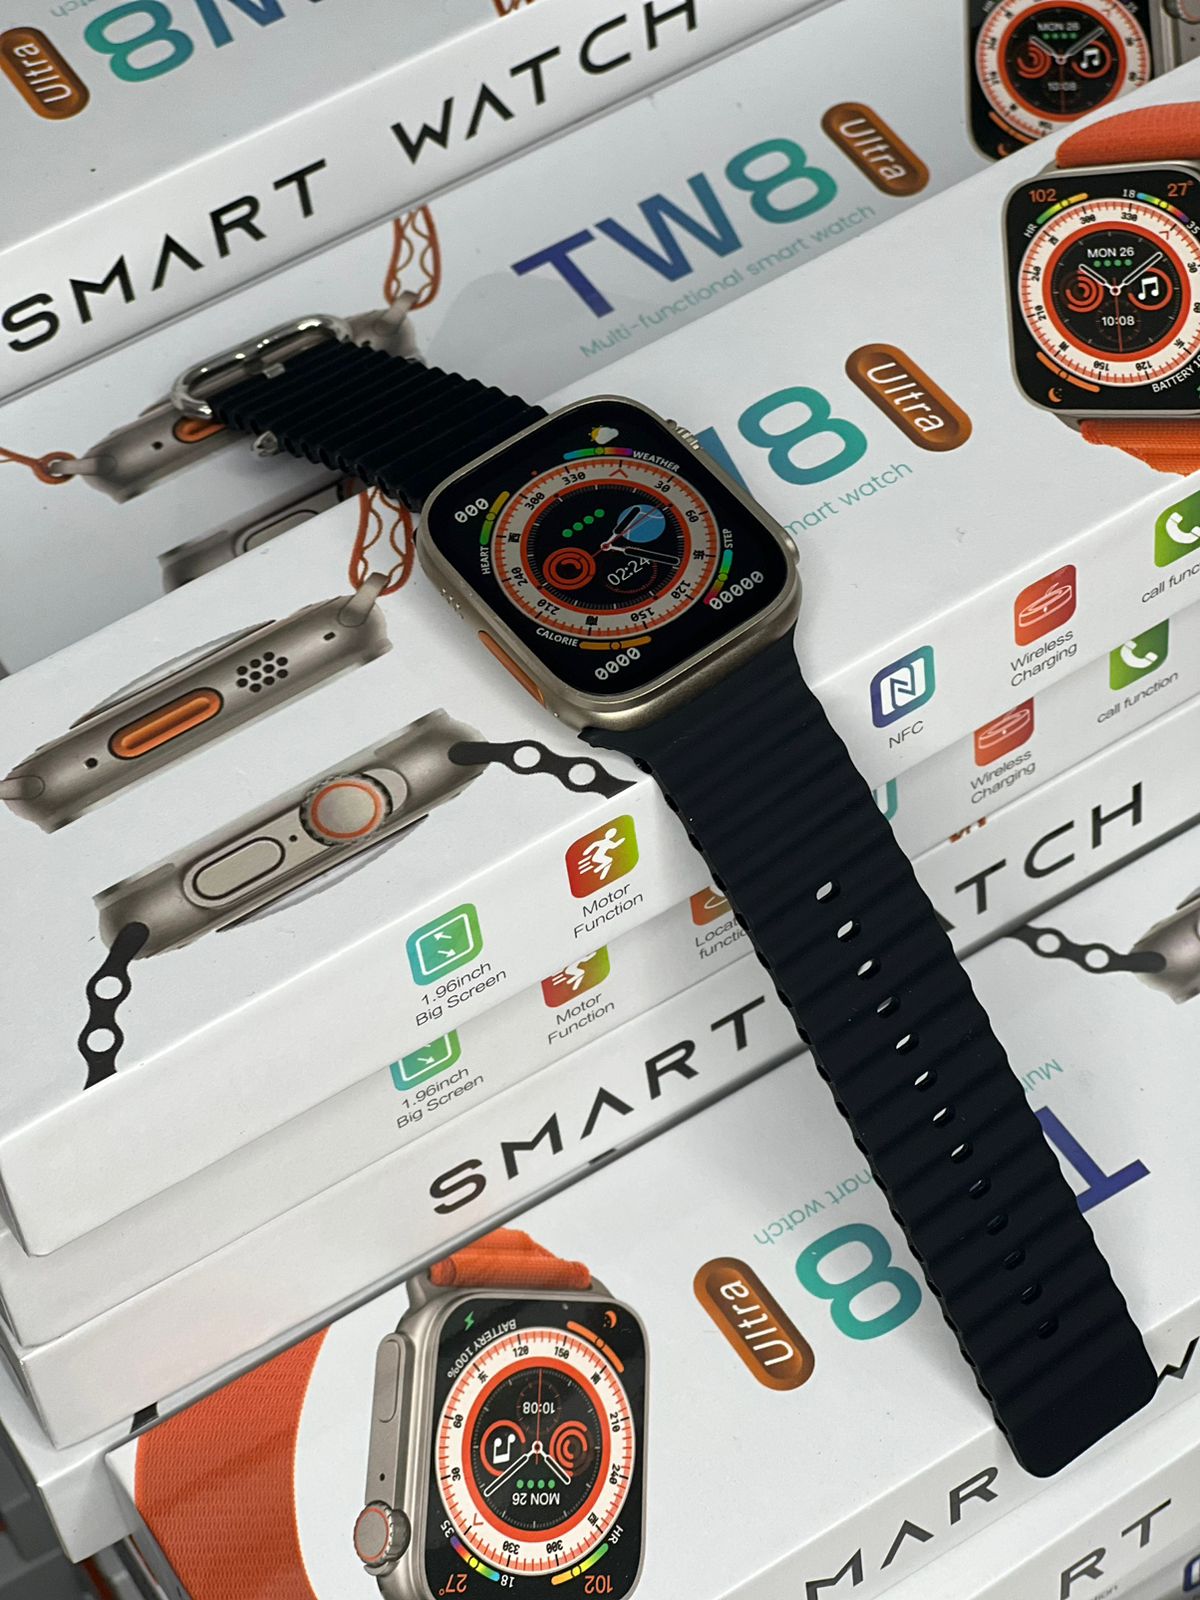 TW8 Ultra Smart Watch